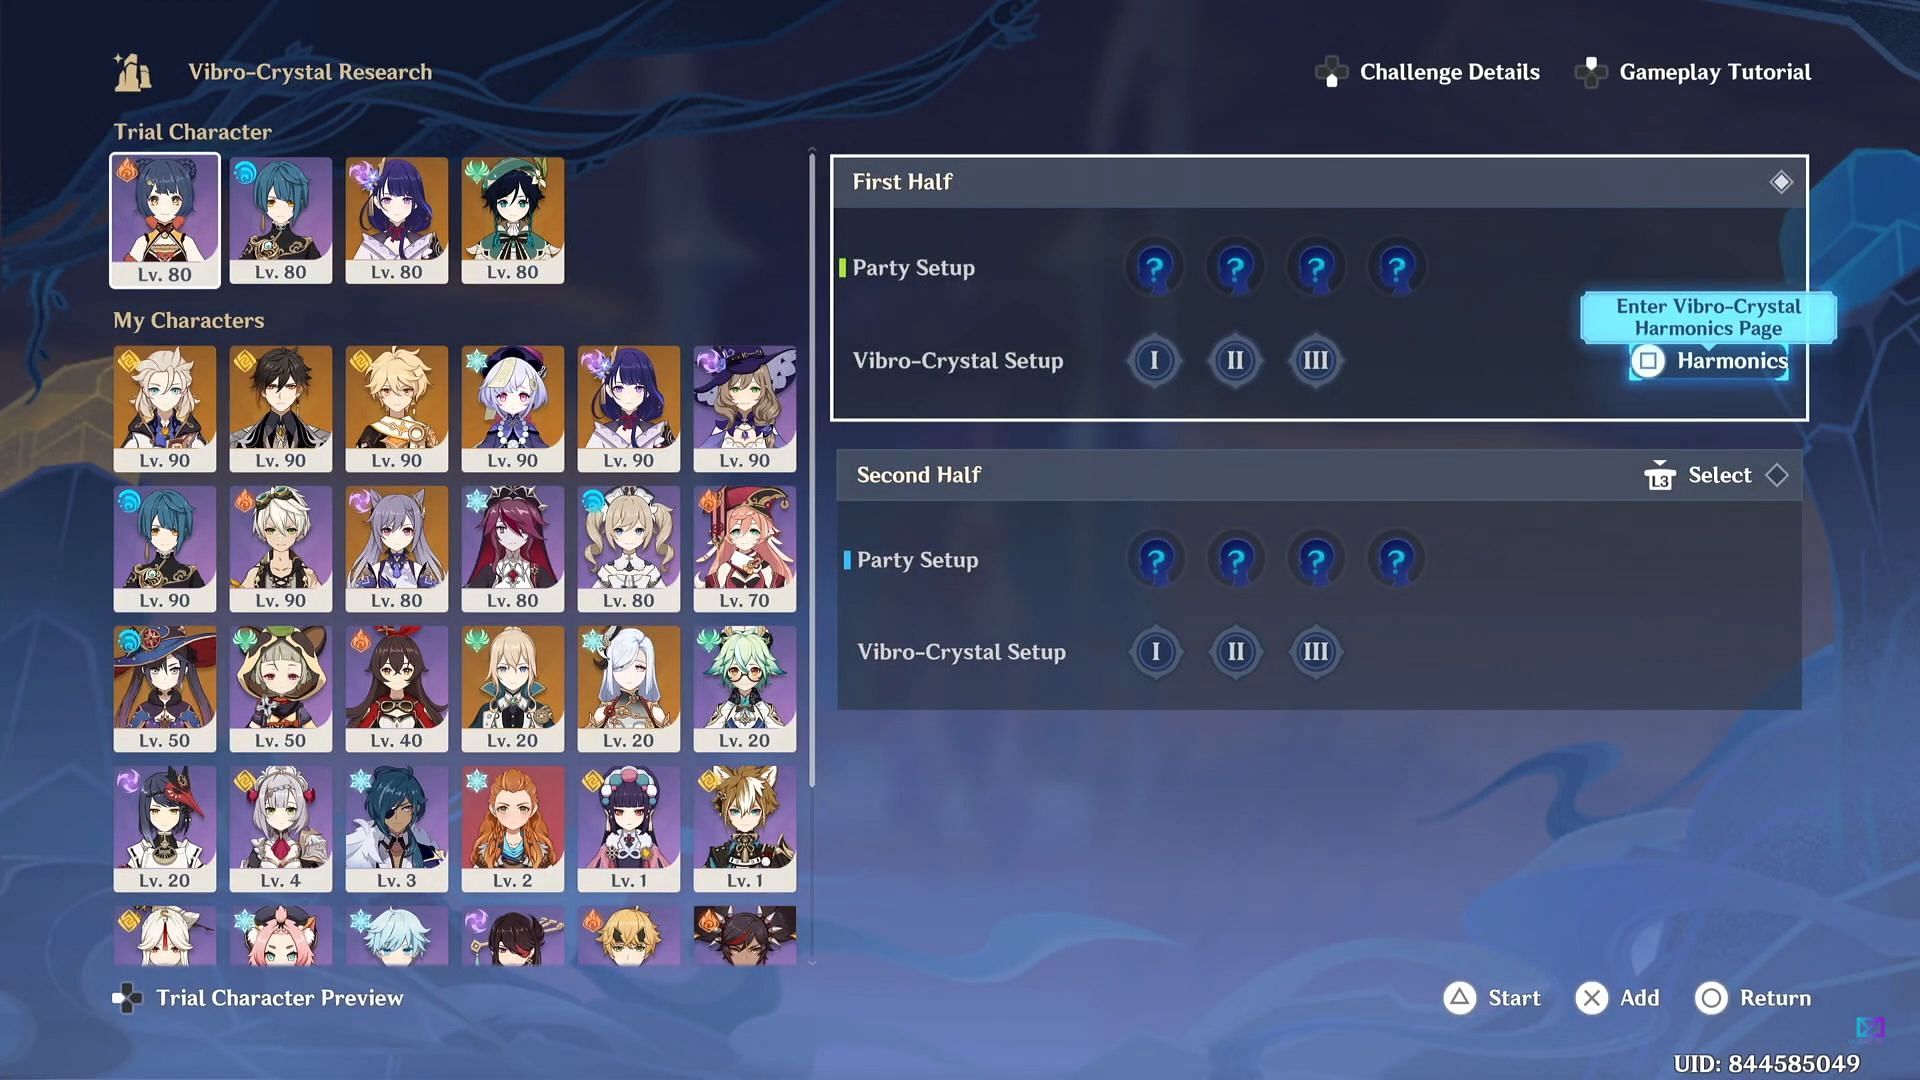 Team selection page (Image via Genshin Impact)